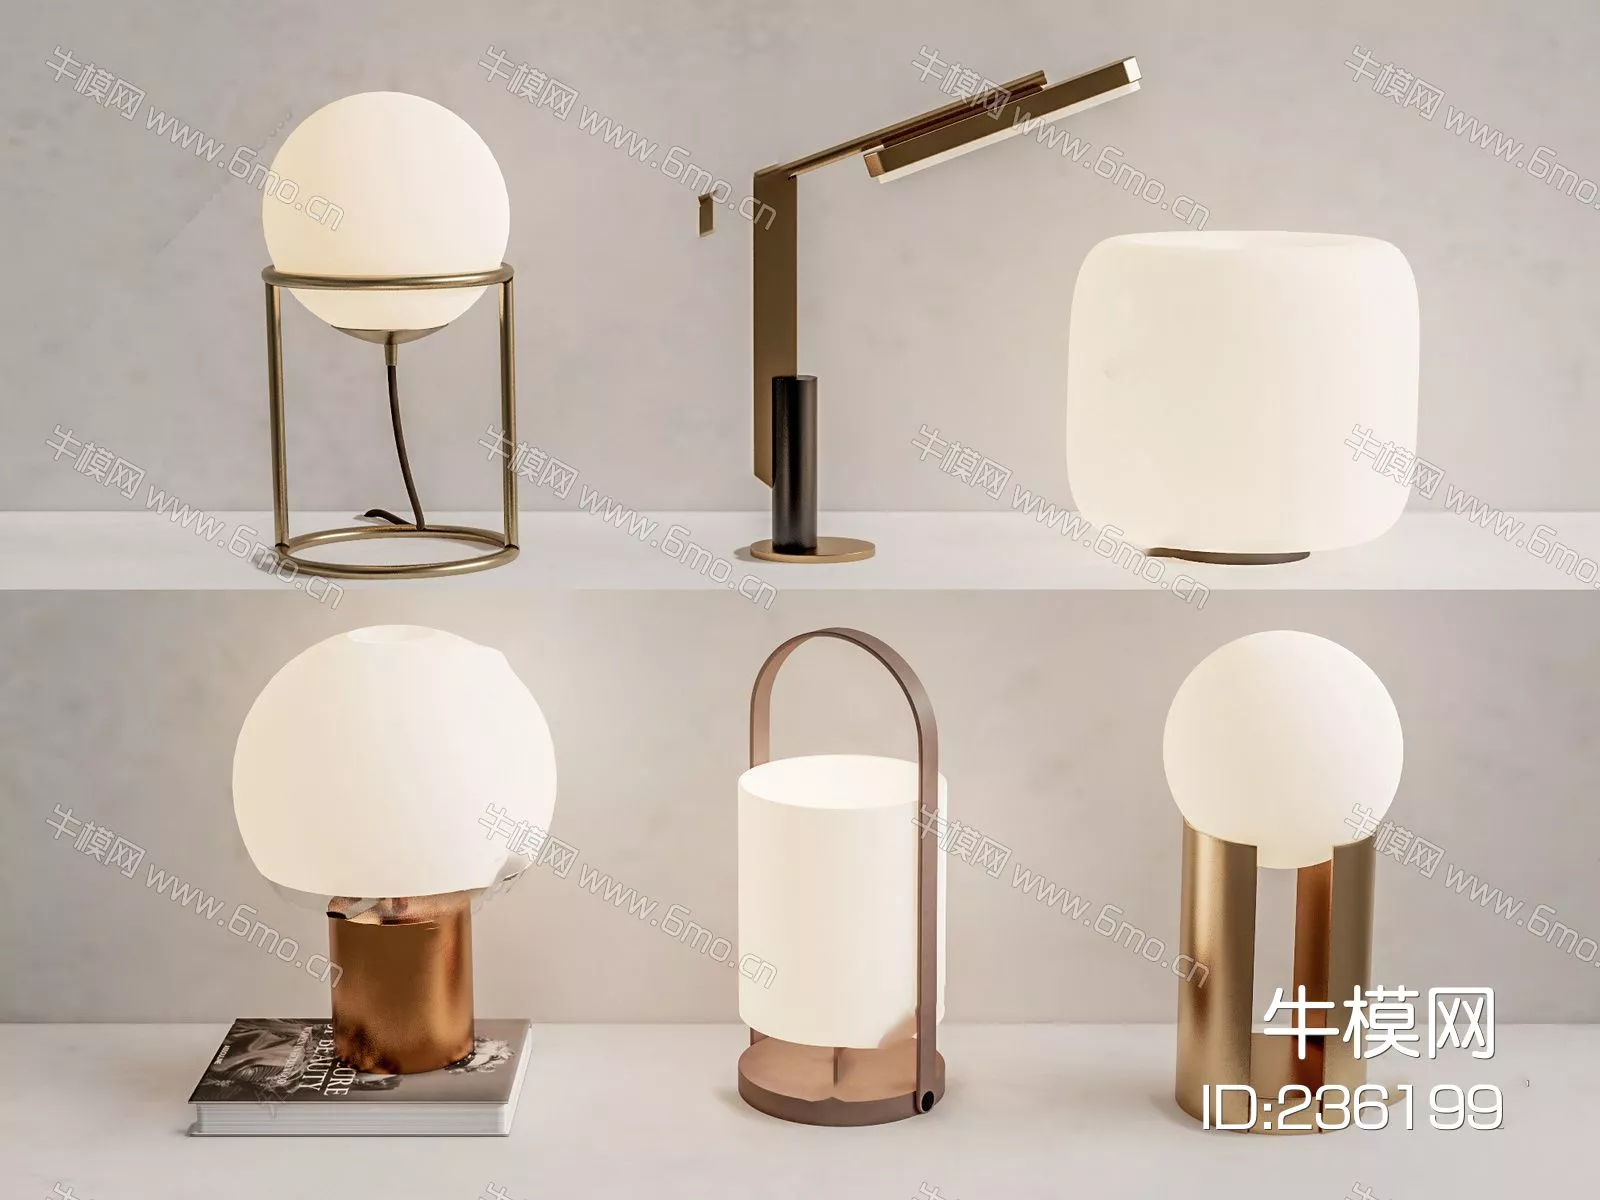 MODERN TABLE LAMP - SKETCHUP 3D MODEL - ENSCAPE - 236199